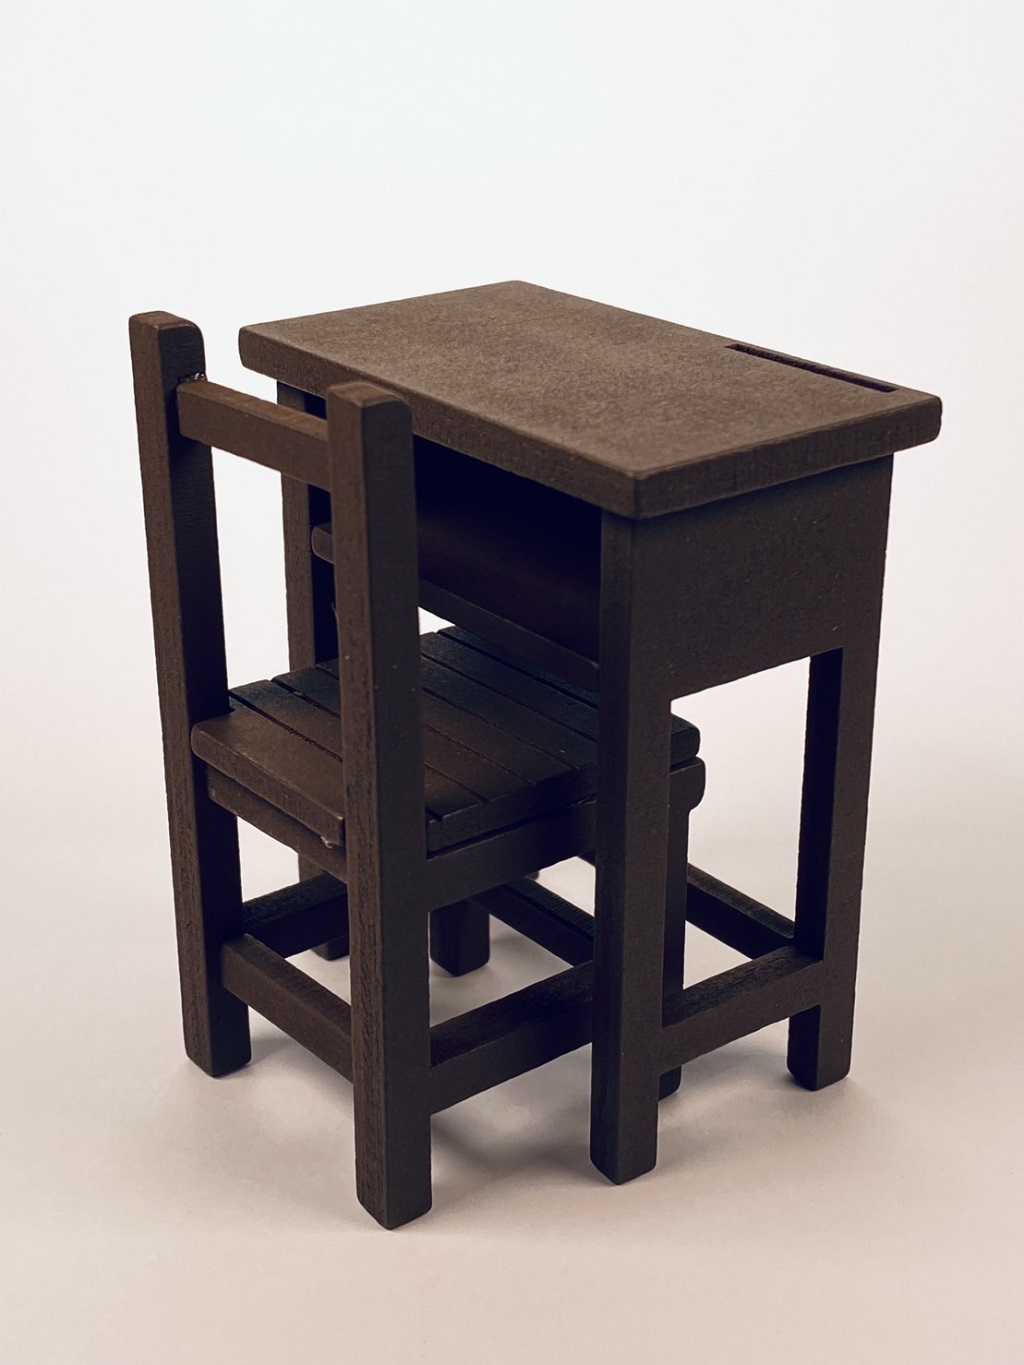 Mini 現貨 小學課桌椅單人組上色版 1:12 , 套件